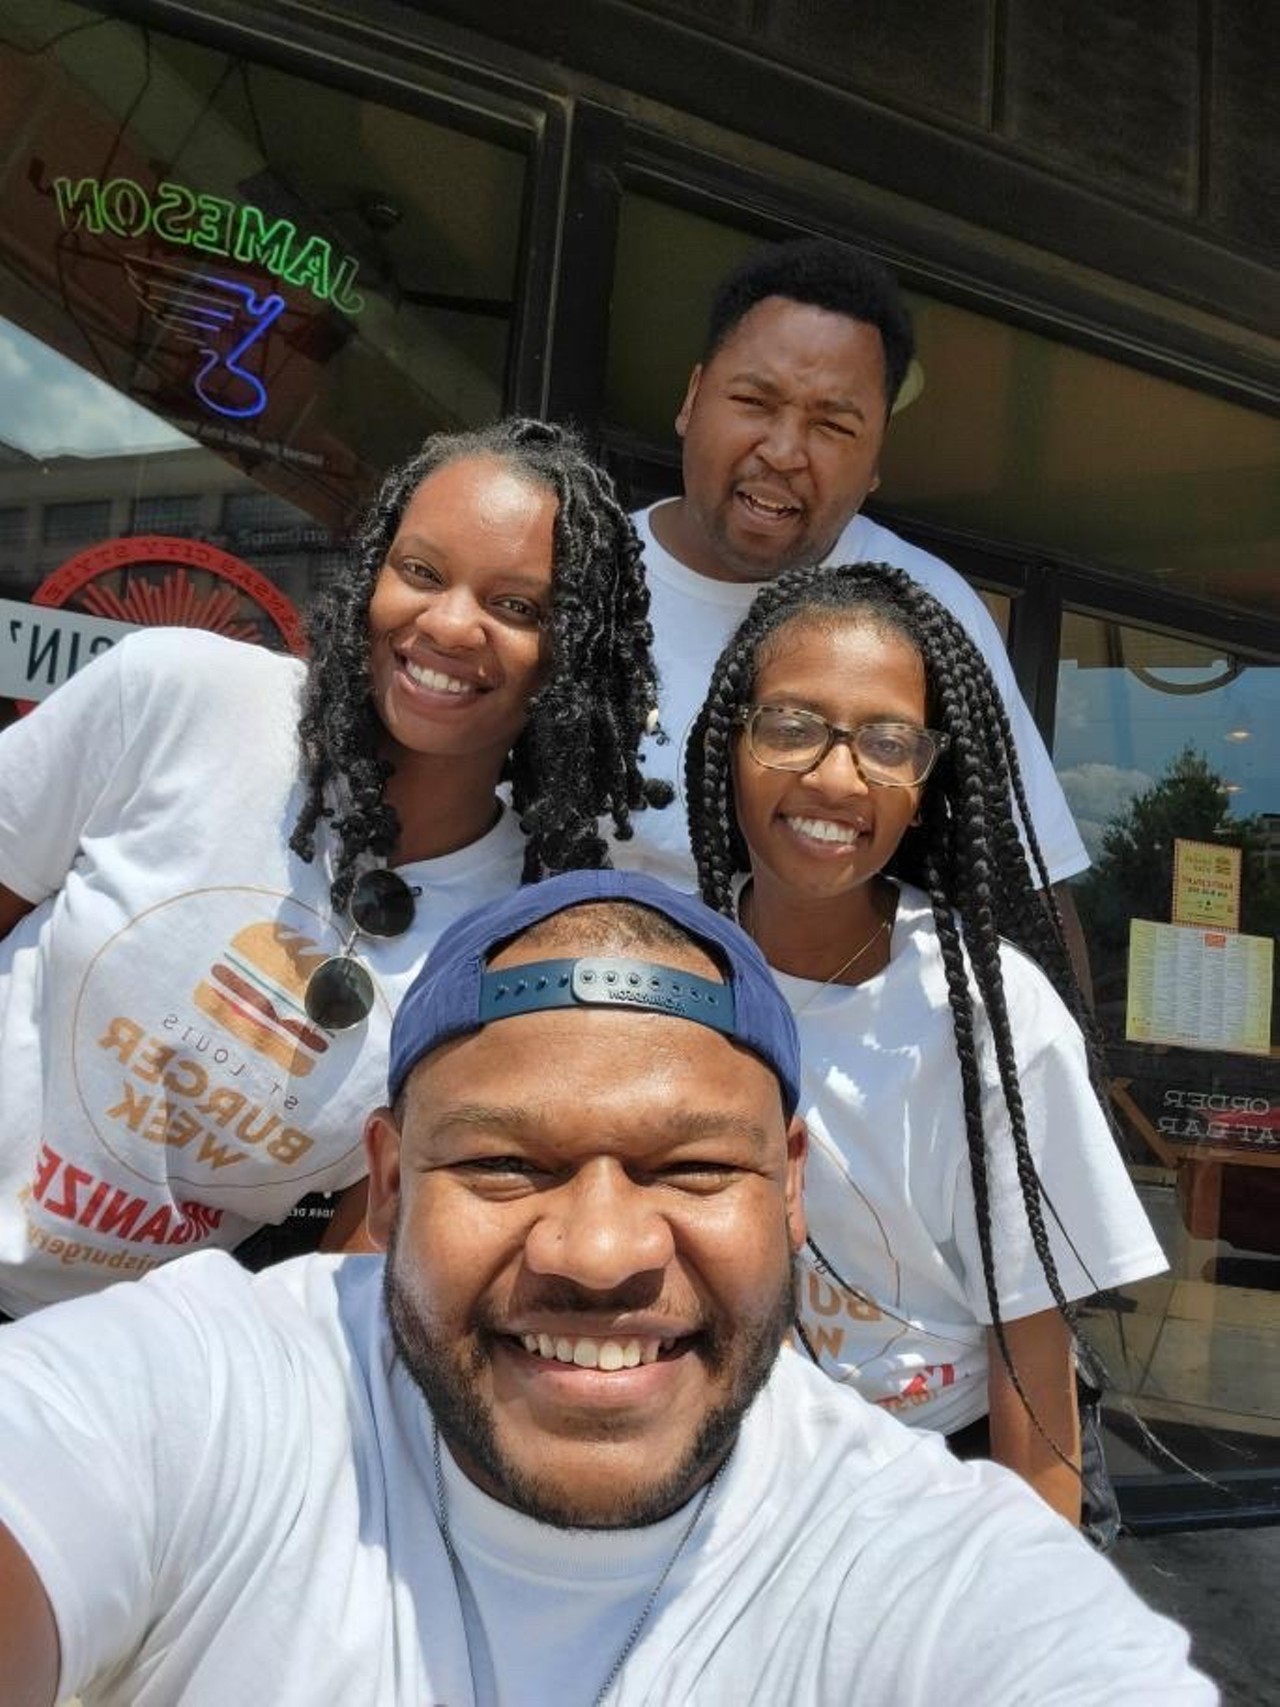 Everyone Loved St. Louis Burger Week 2021 [PHOTOS]